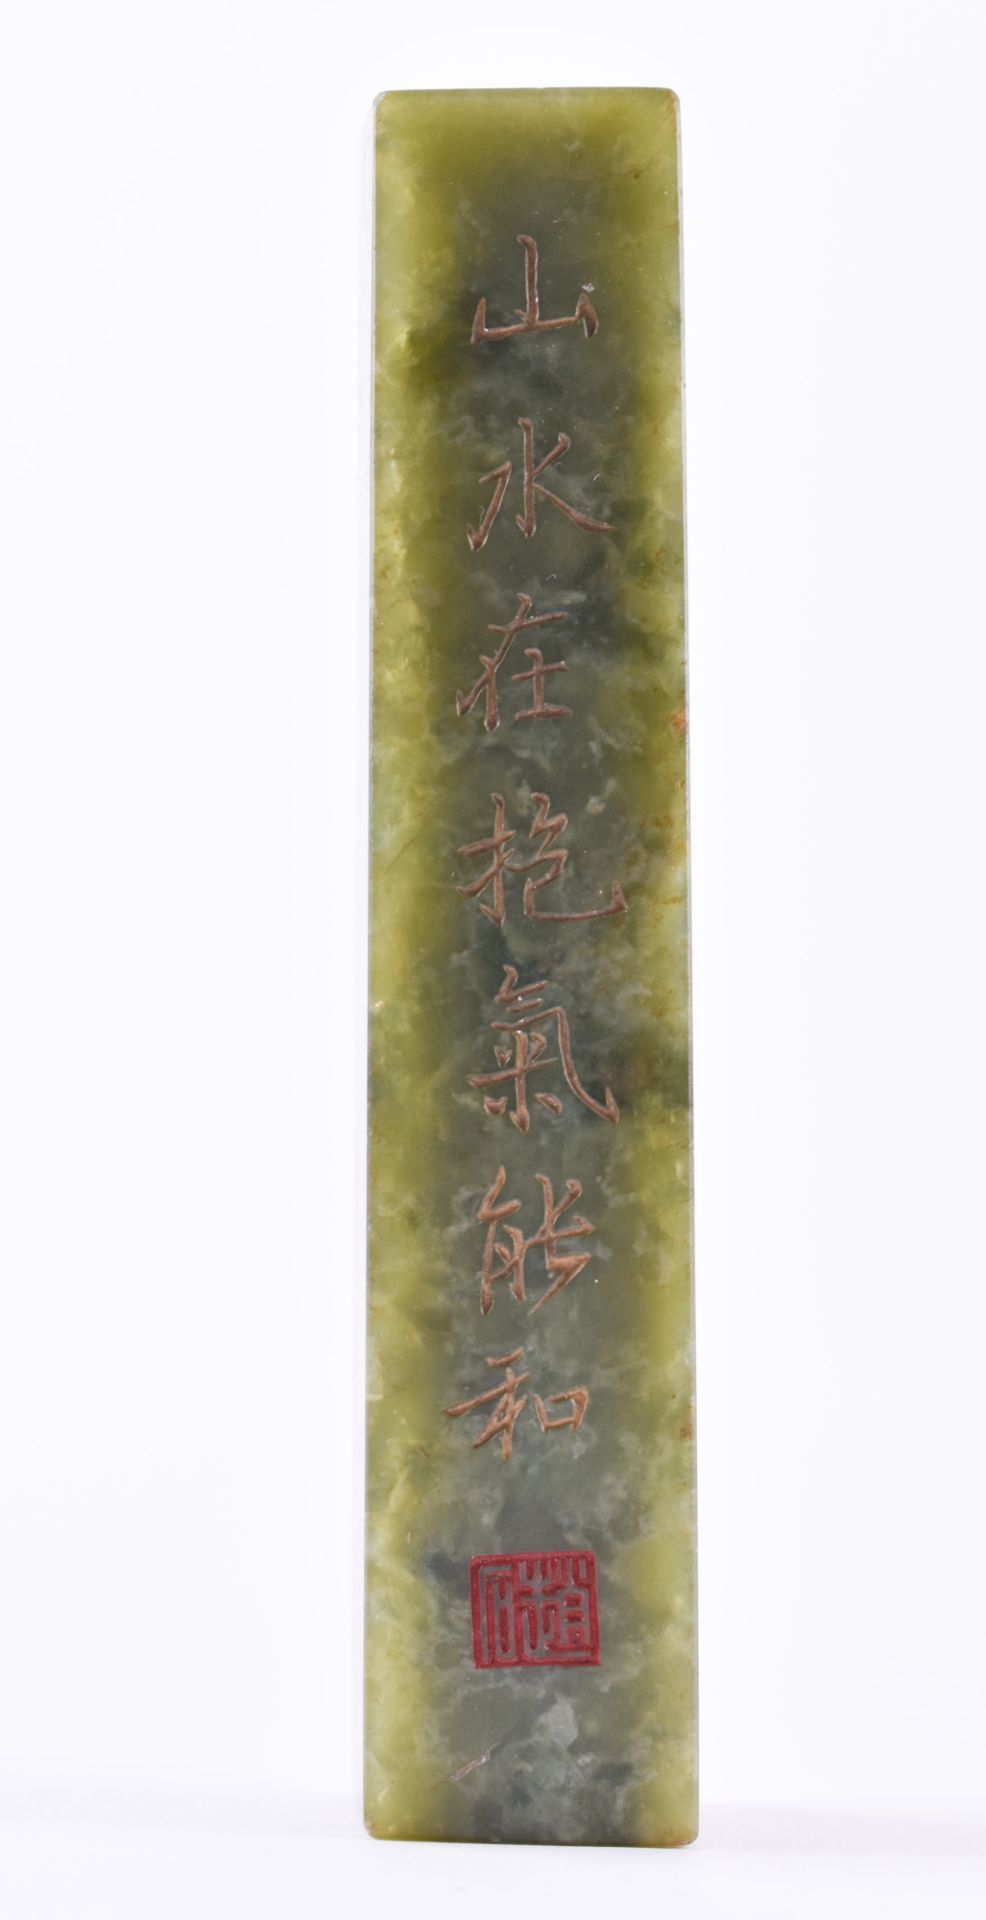 Jade PapiergewichtPapiergewicht Jadeit, Maße: 12,5 cm x 2,6 cm x 2,1 cm, Gewicht: 169,6 g, mit